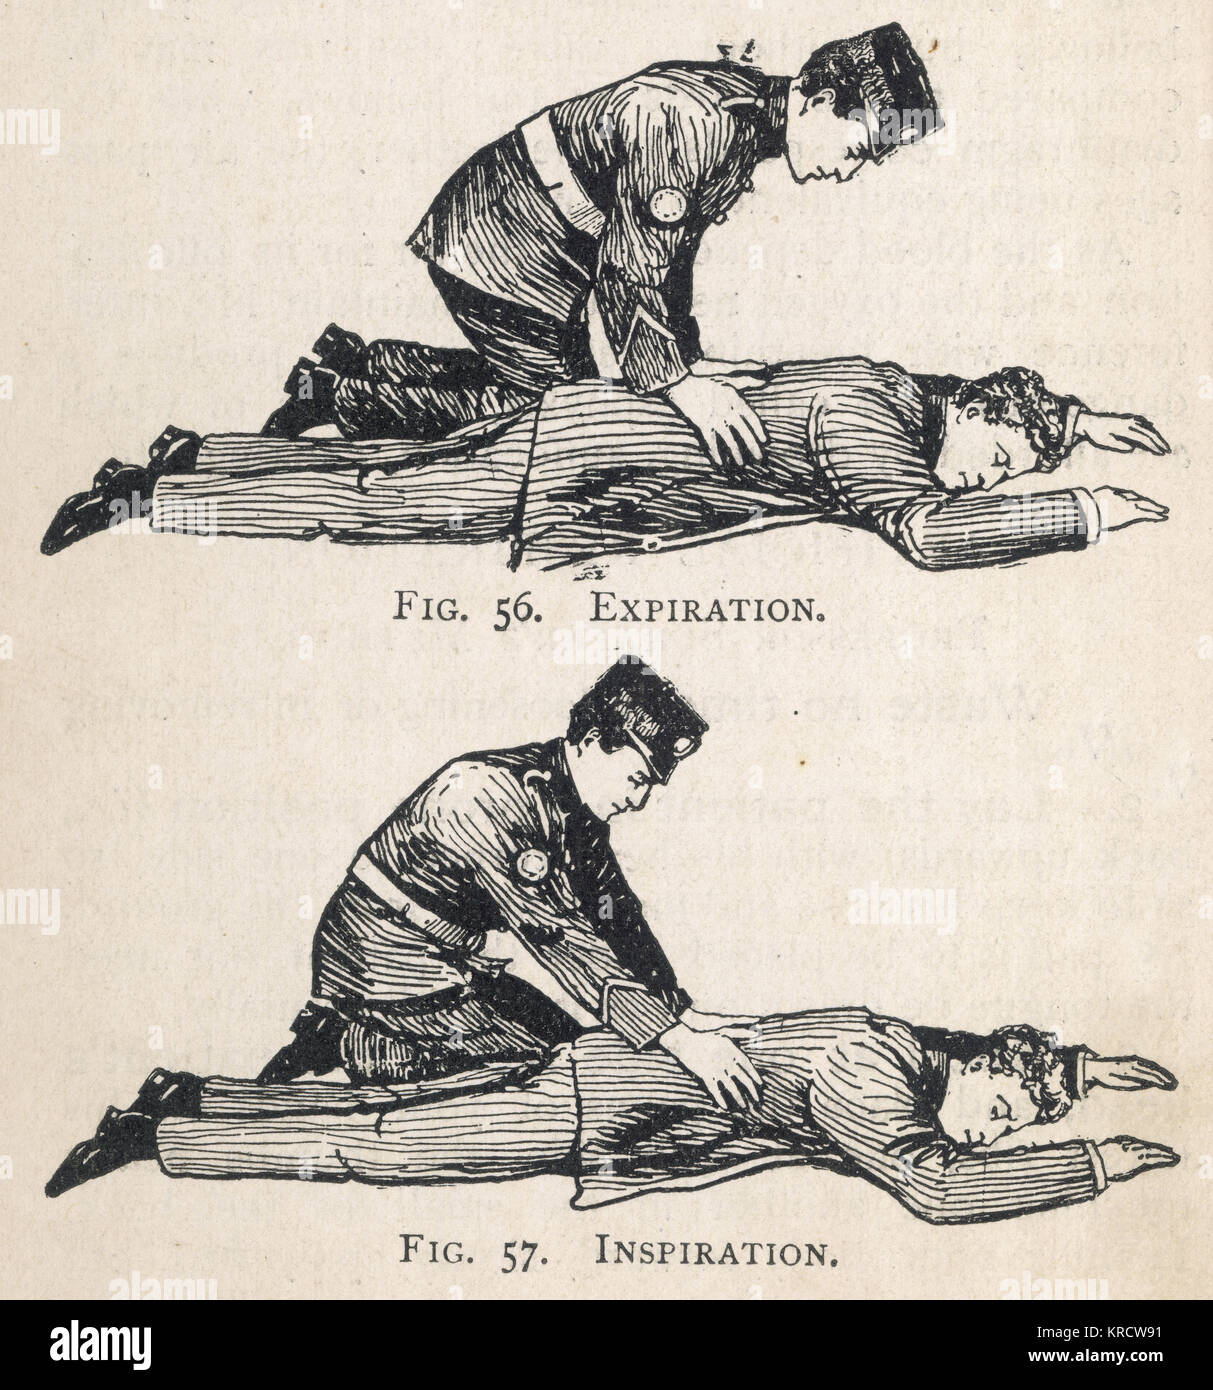 Primo schema di aiuto, illustrante la respirazione artificiale -- Professore Schafer di metodo, con scadenza (sopra) e di ispirazione (sotto). Data: 1908 Foto Stock